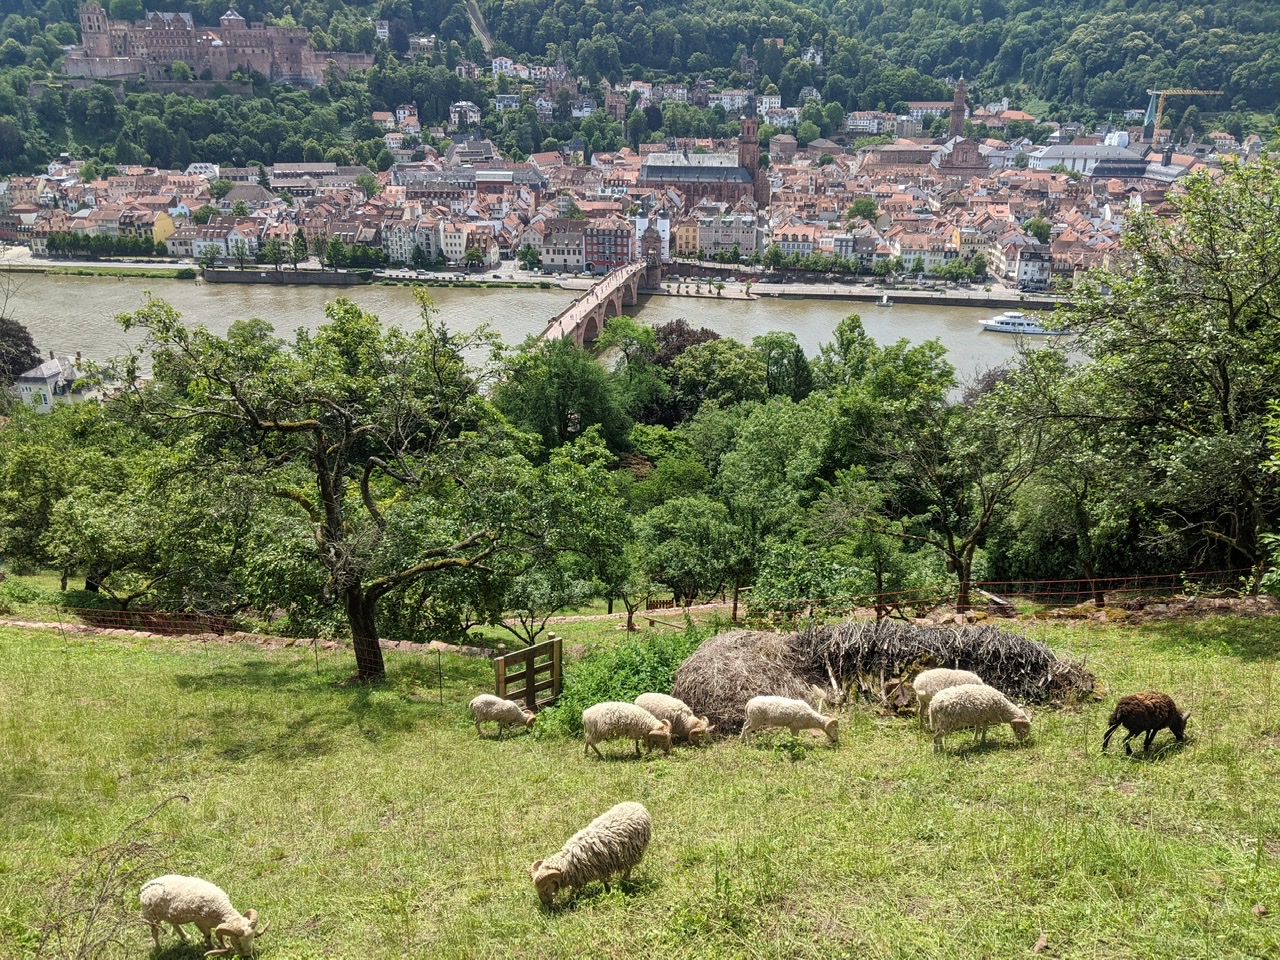 Sheep above the Neckar